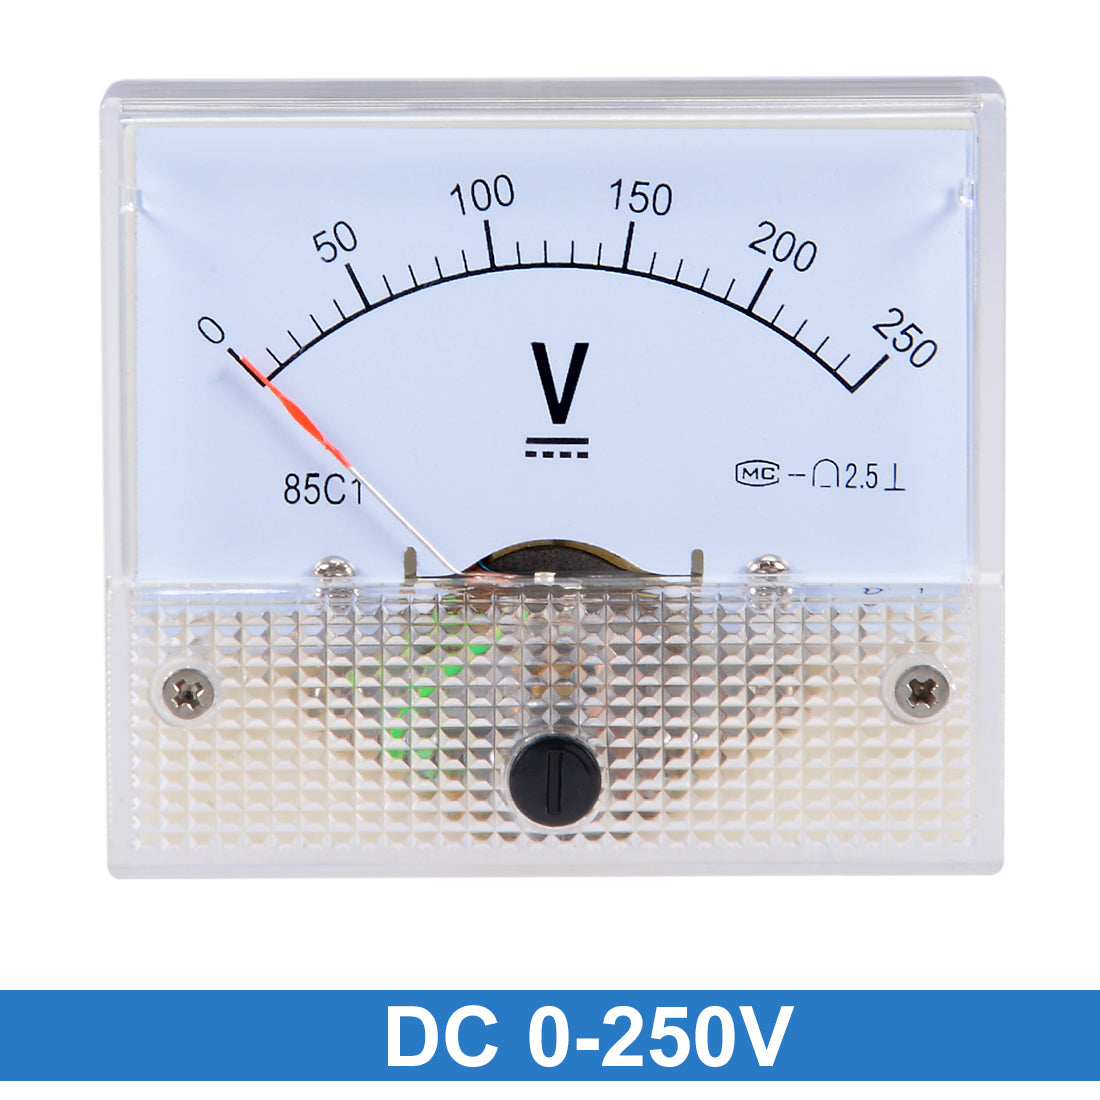 uxcell Uxcell DC 0-250V Analog Panel Voltage Gauge Volt Meter 85C1 2.5% Error Margin